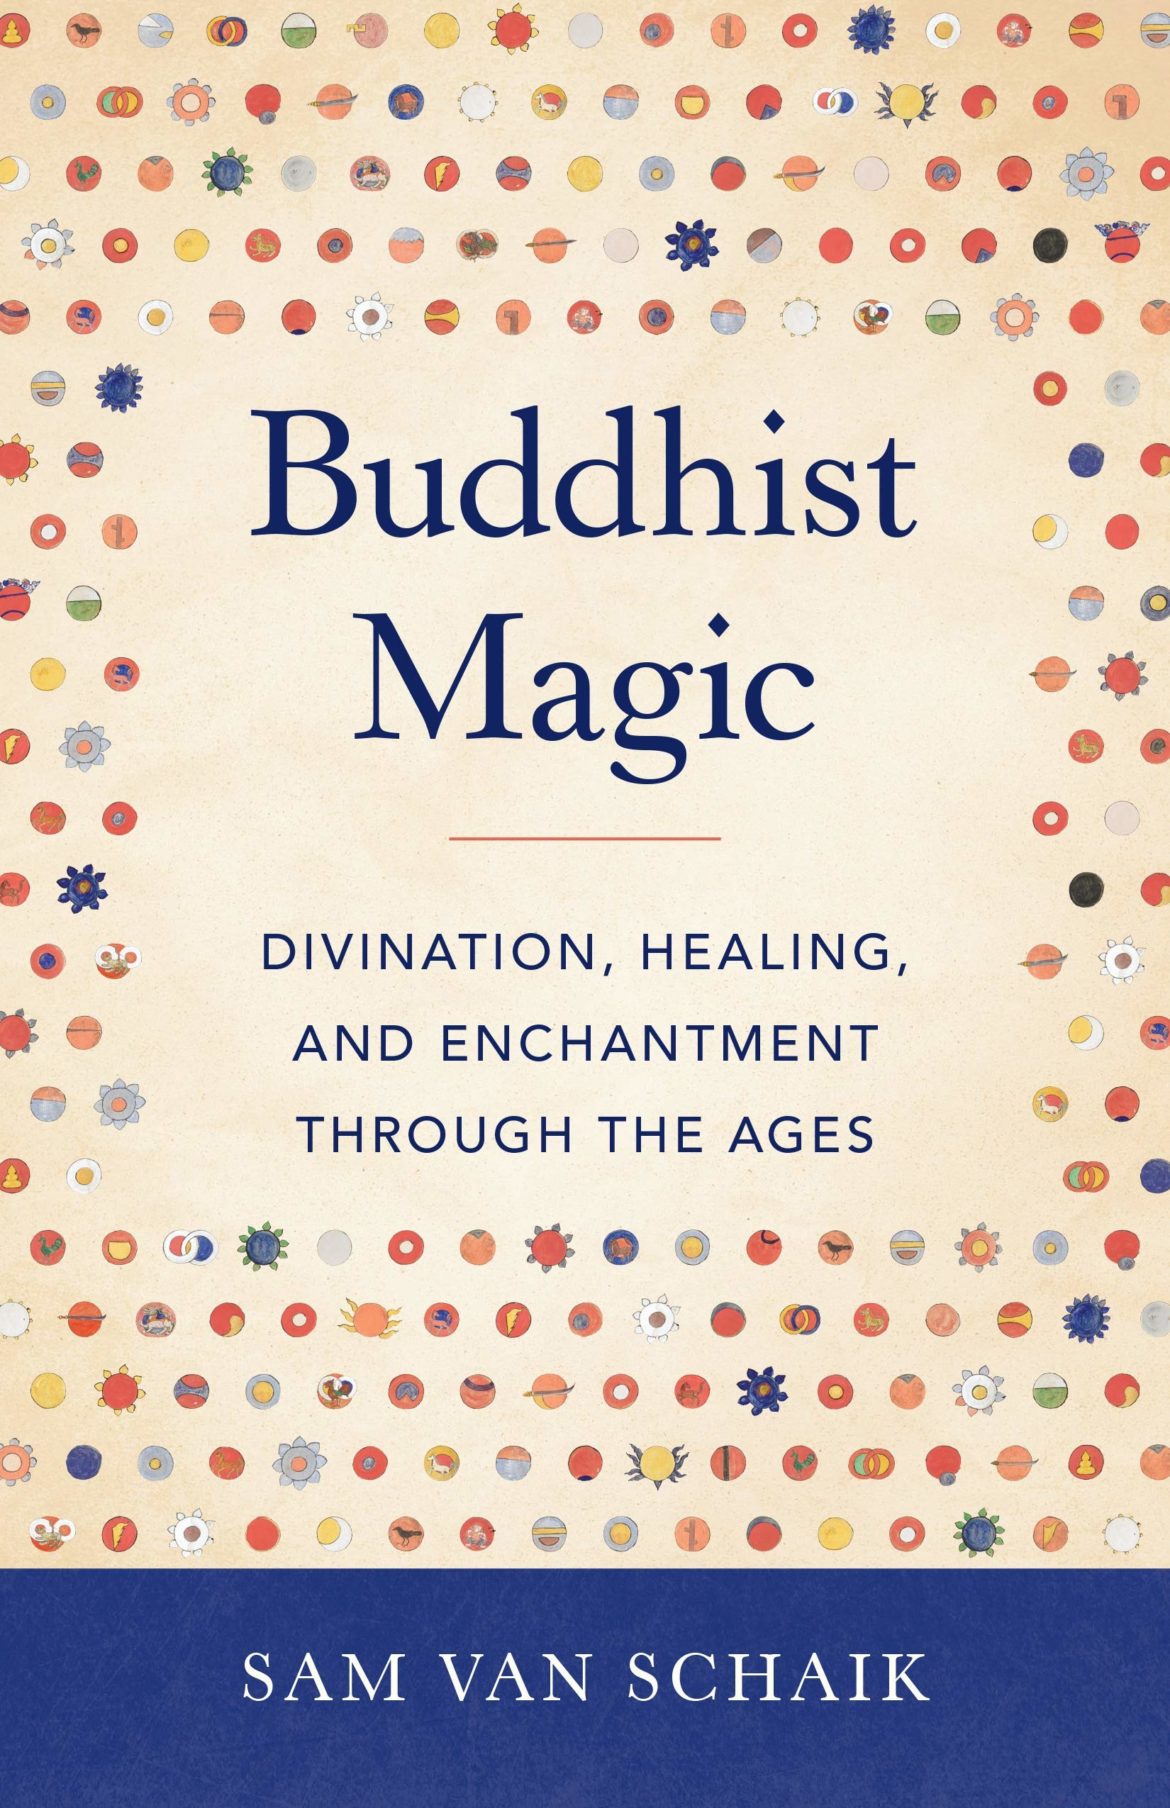 15 Buddhist Magic, Spells 3 The Garuda Cycle, by Sam Van Schaik